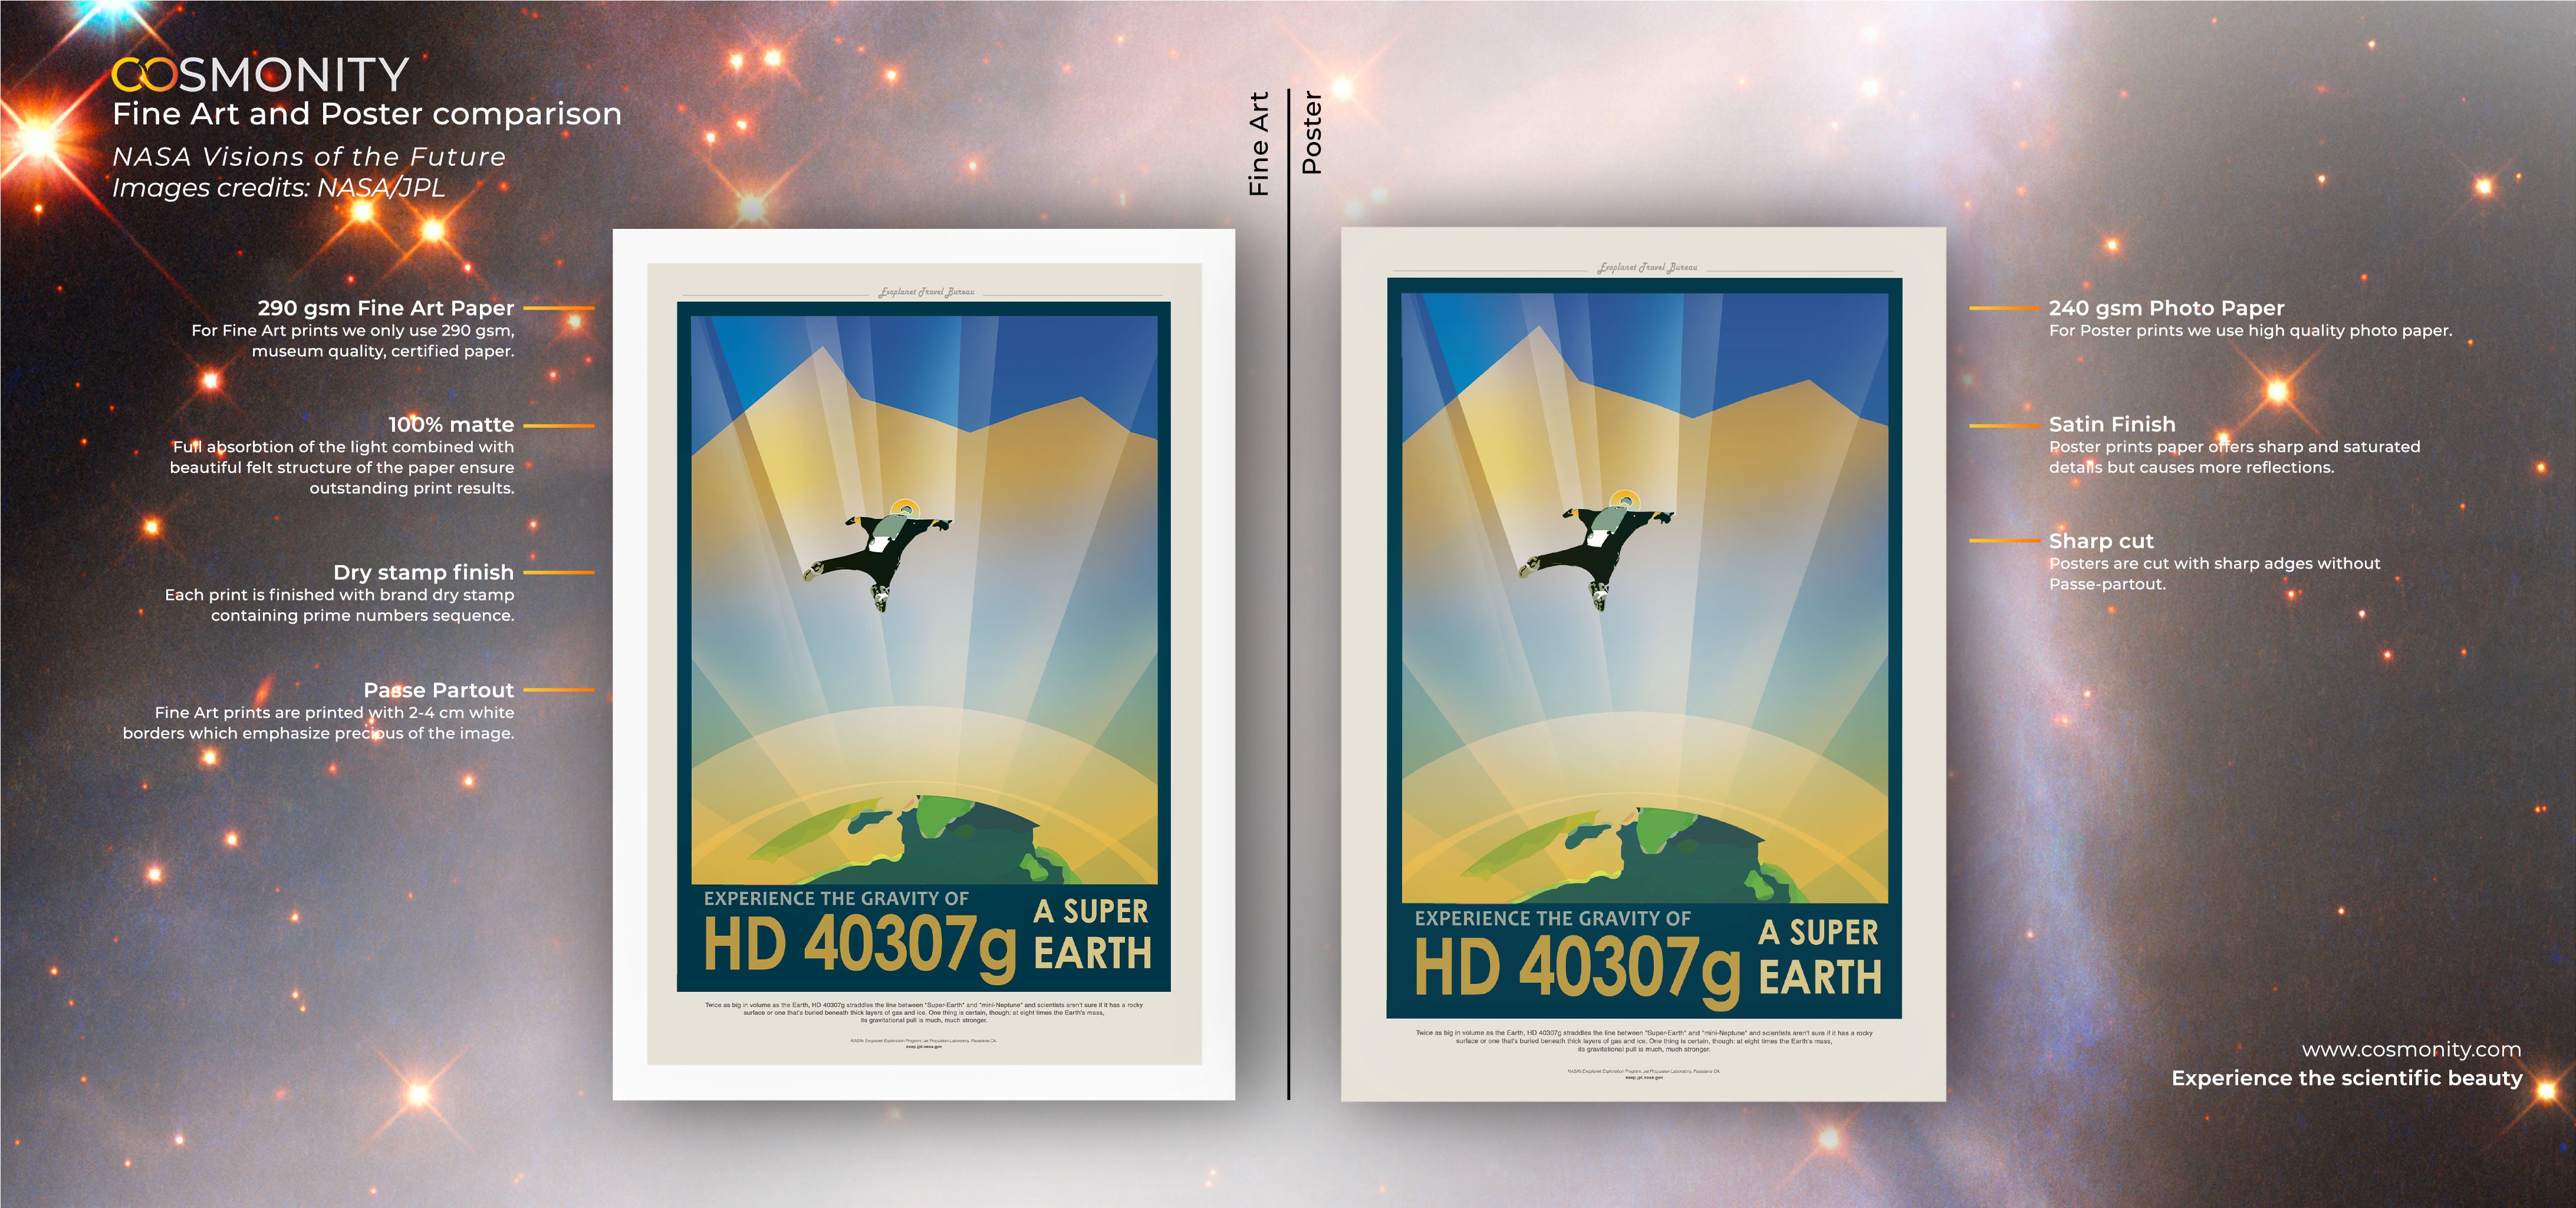 HD40307g - Visions of the Future Plakat NASA